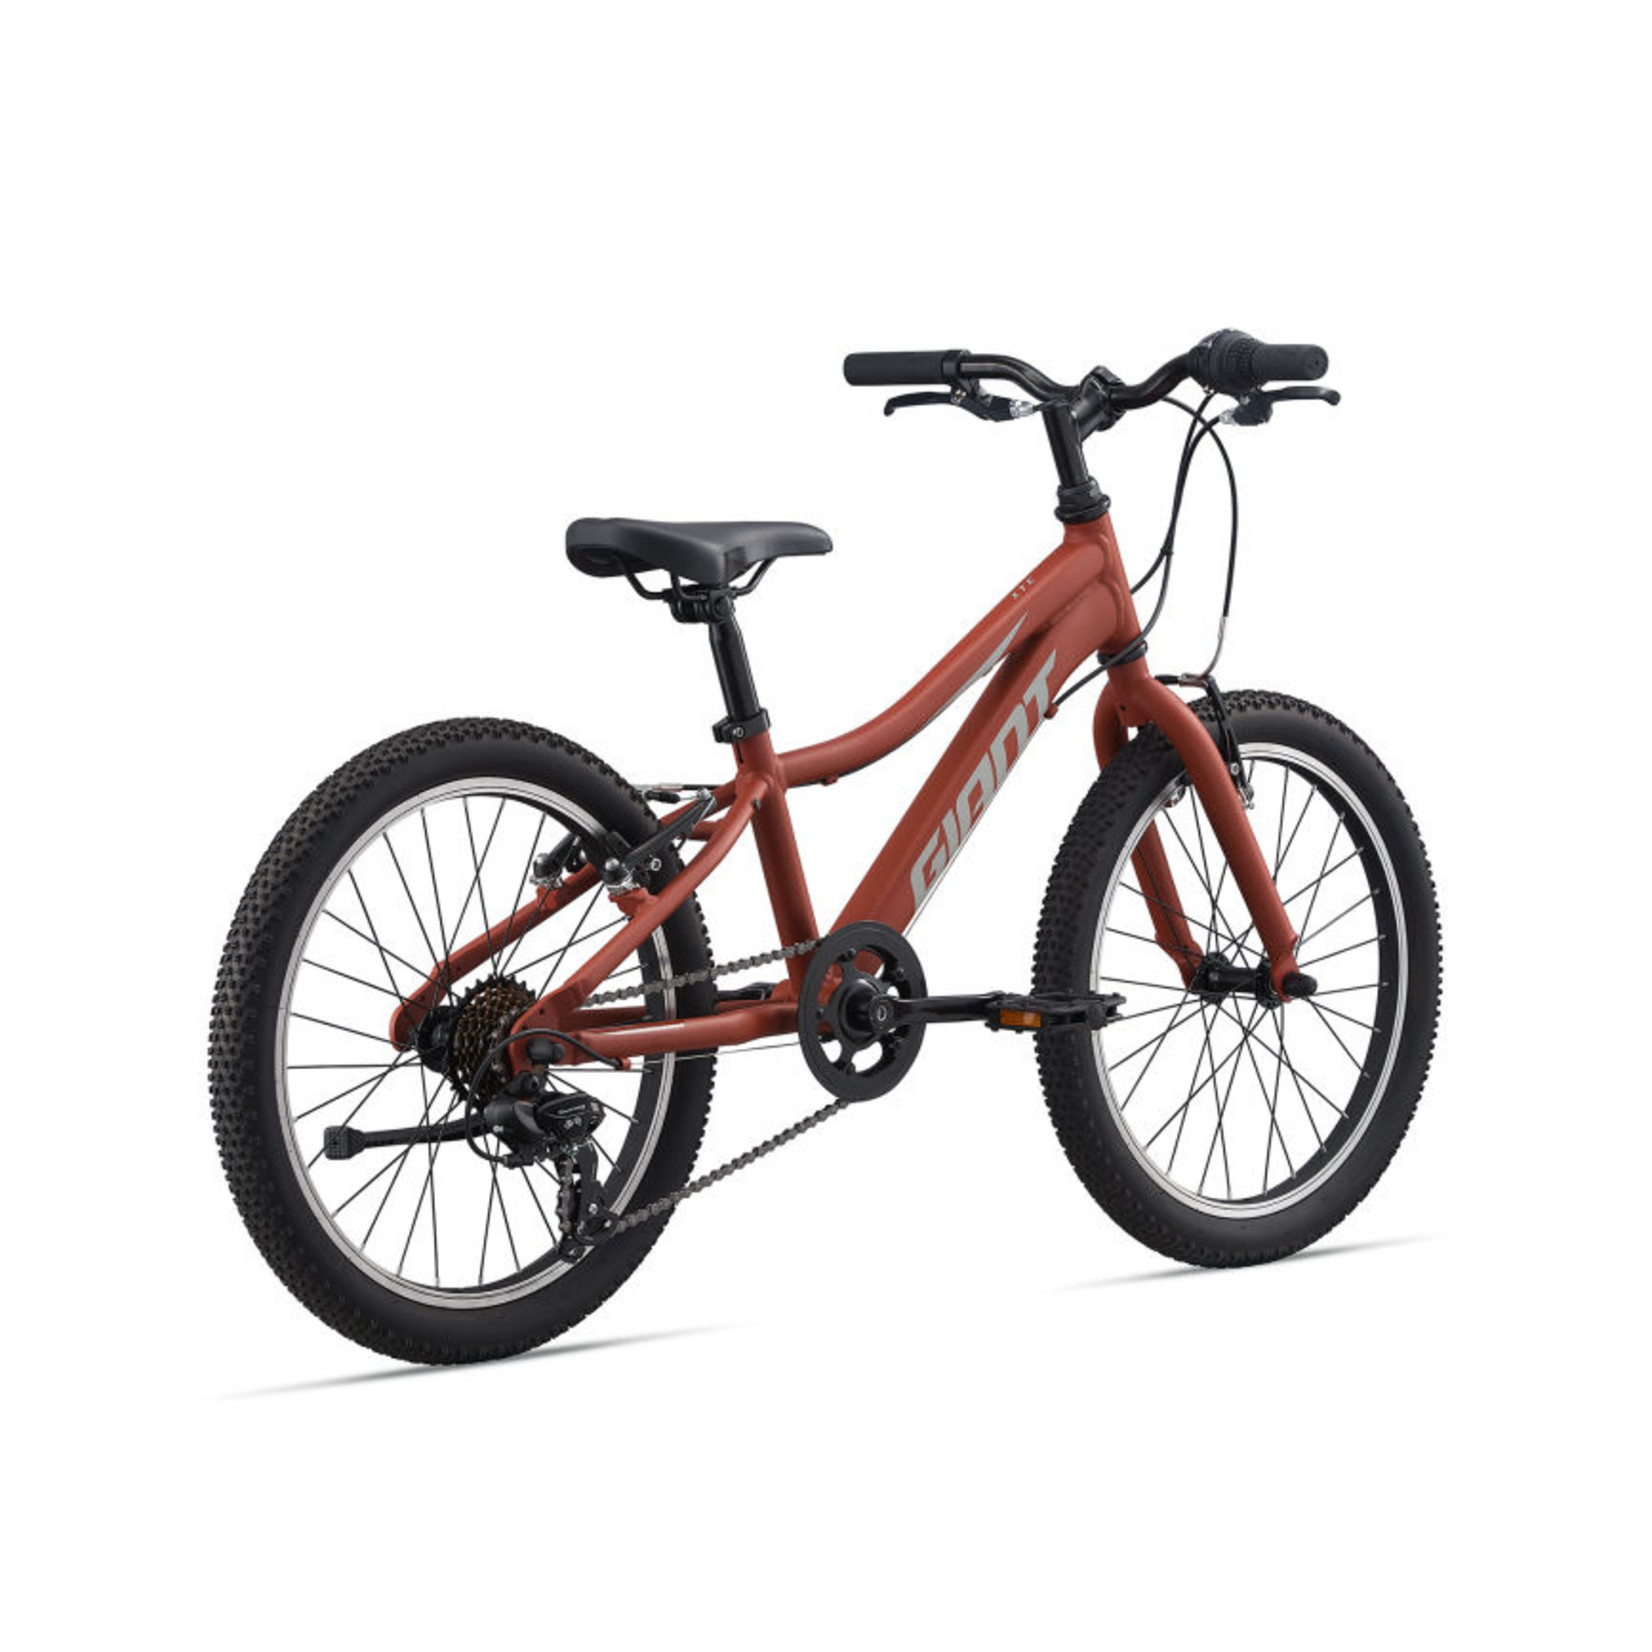 Велосипед для роста 140 см. Giant xtc Jr 20. Велосипед giant xtc Jr 20. Giant xtc Jr 20 2020. Giant xtc Jr 20 2021 (красный).